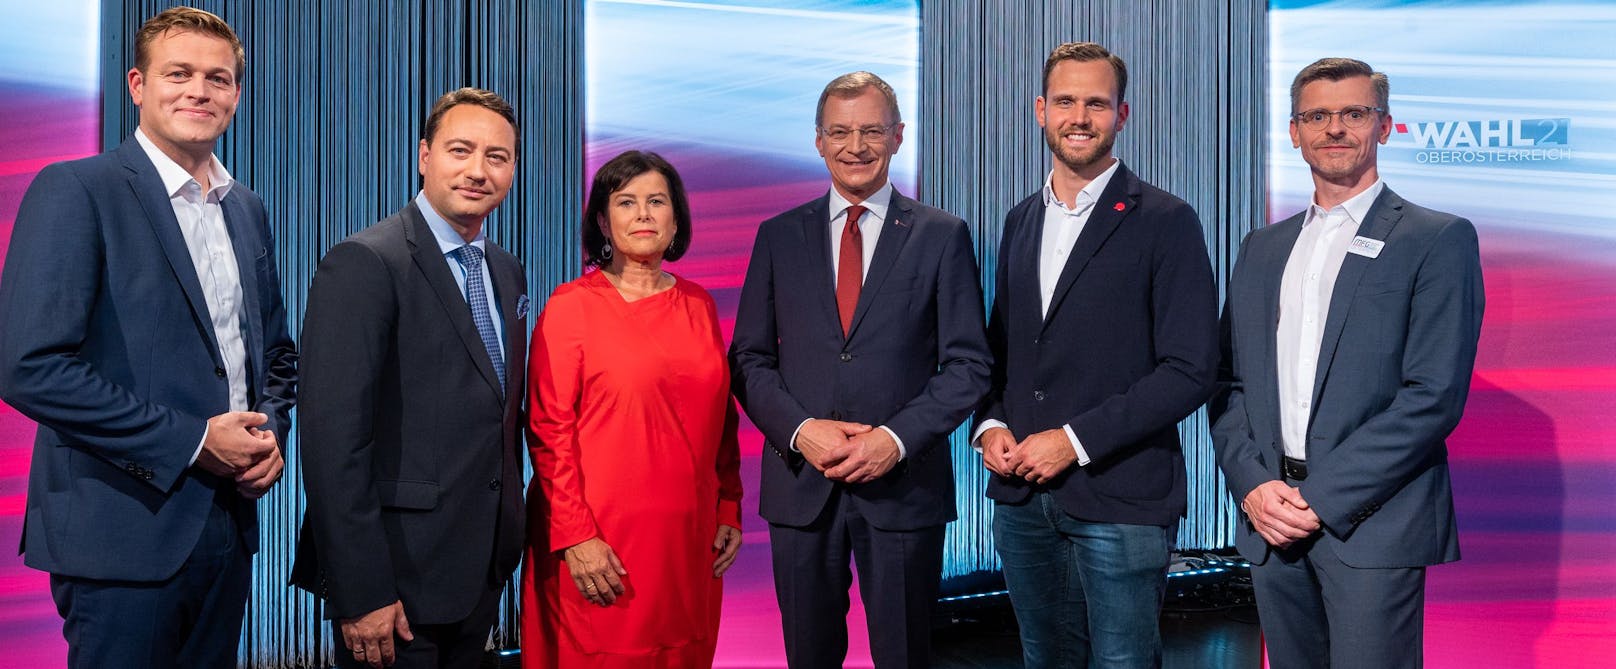 Die Spitzenkandidaten der OÖ-Landtagswahl 